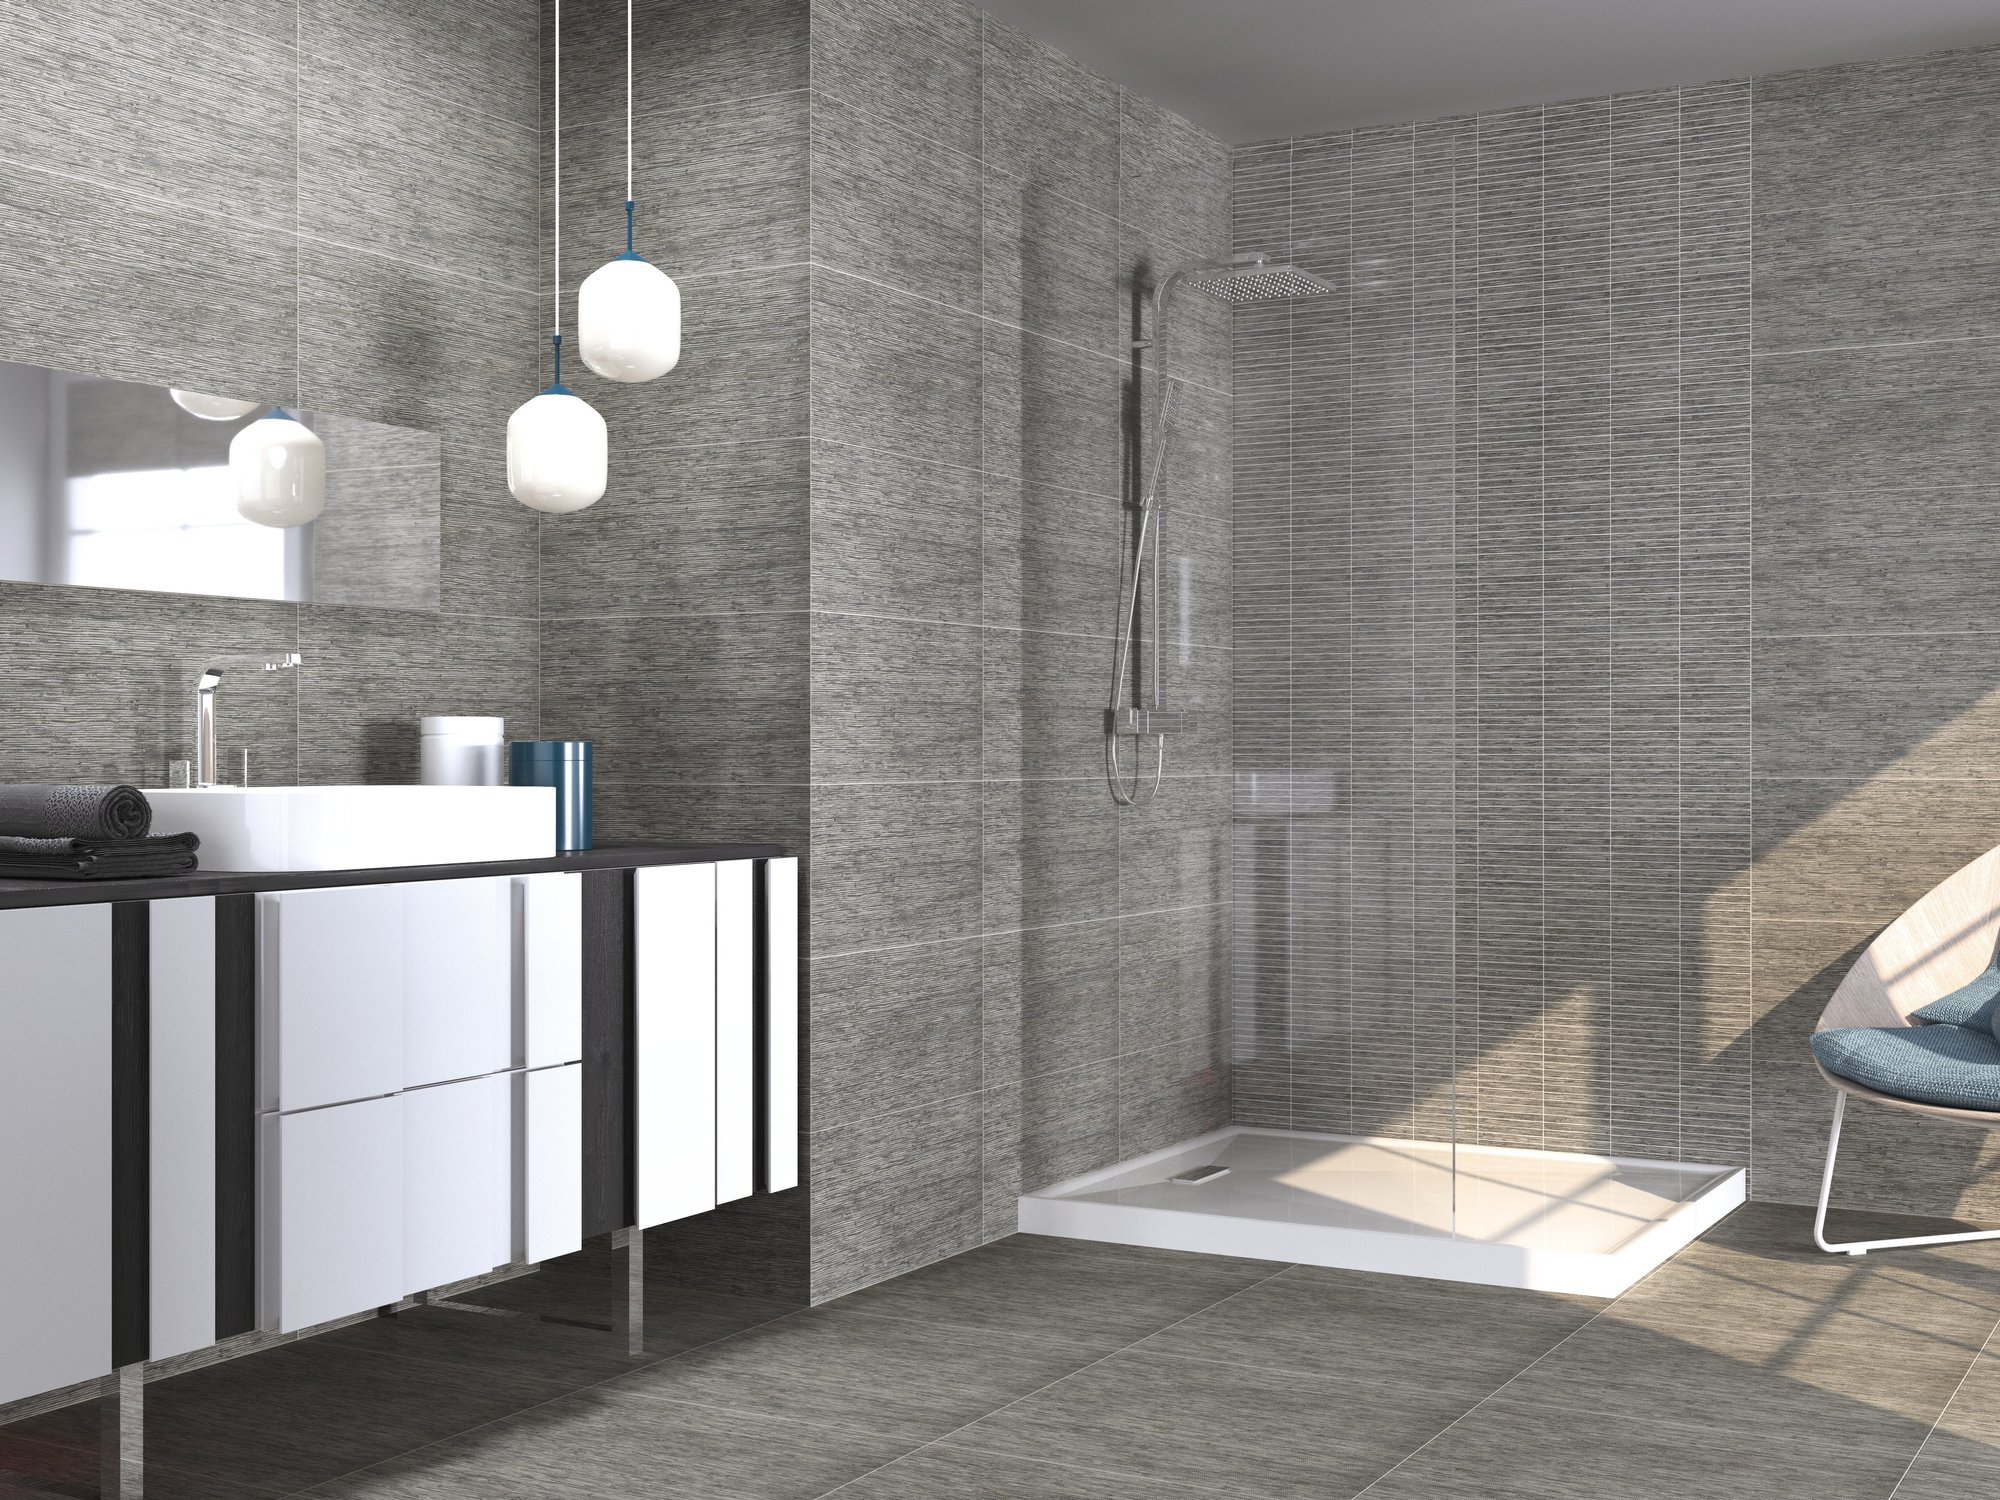 Stijlvolle Badkamertegels In Formaat 30 X 60 (Stylish Bathroom Tiles In 30 X 60 Format)